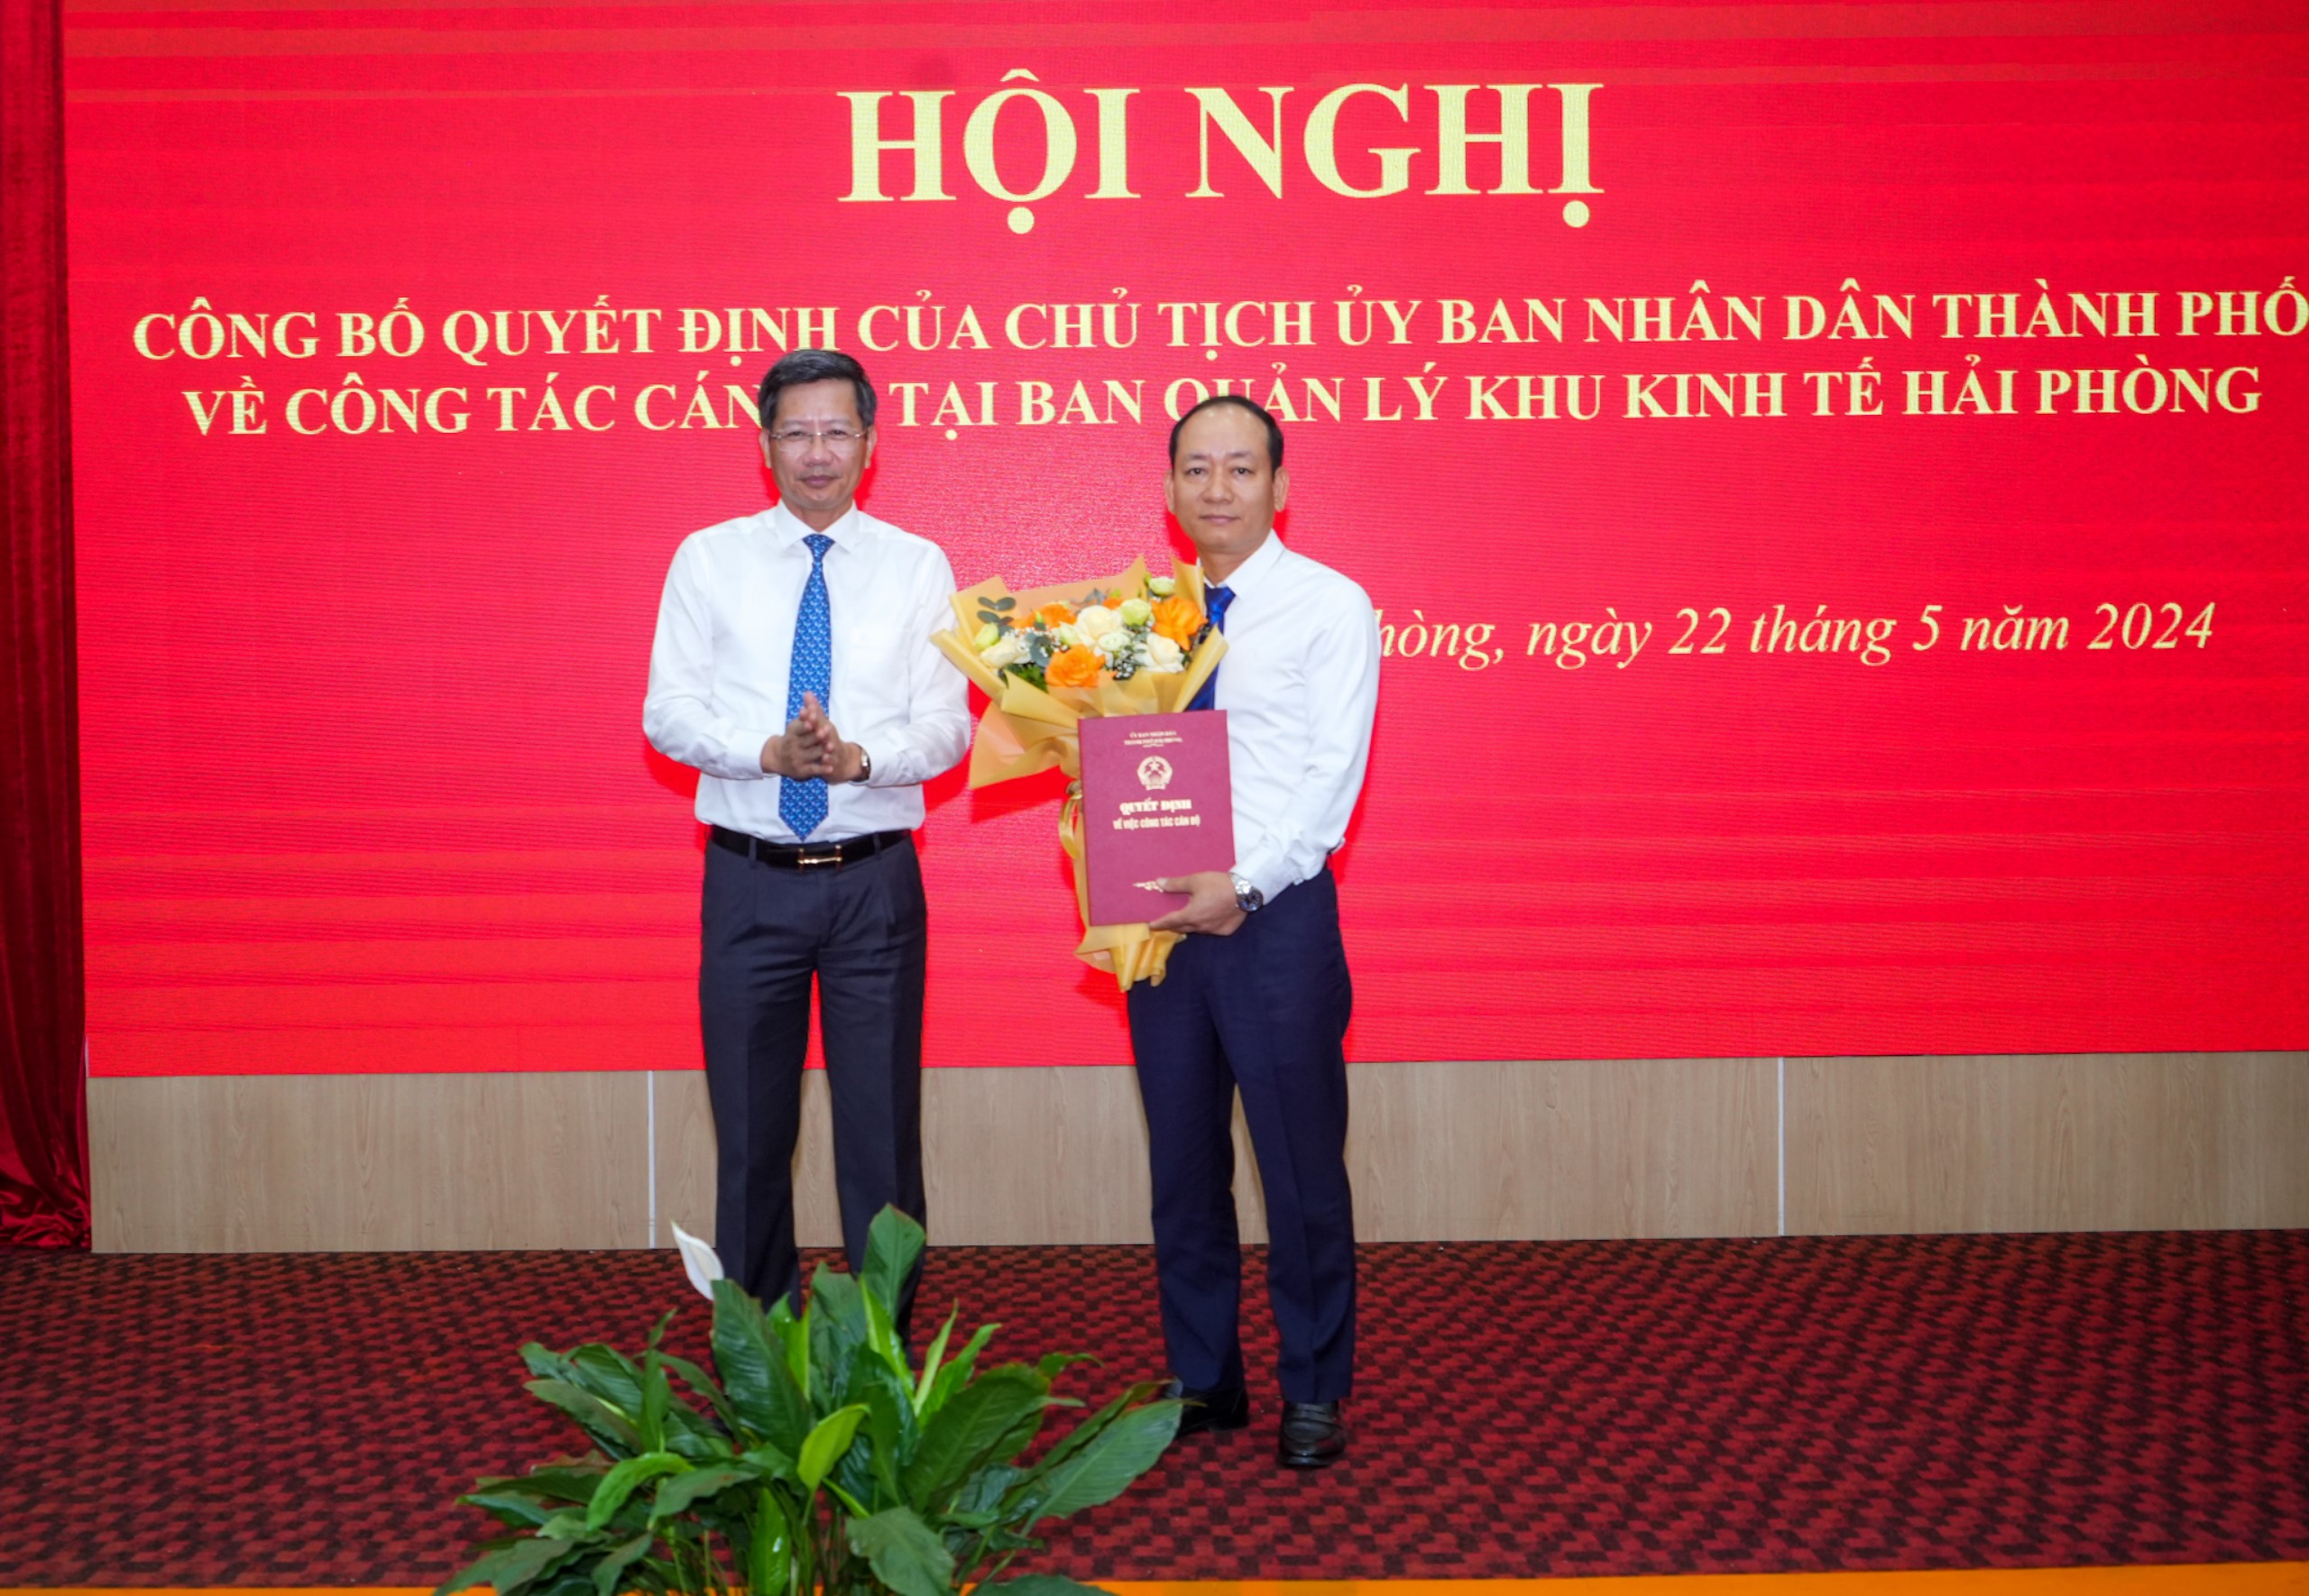 Bổ nhiệm đồng chí Nguyễn Quang Minh giữ chức vụ Phó Trưởng ban Ban Quản lý Khu kinh tế Hải Phòng